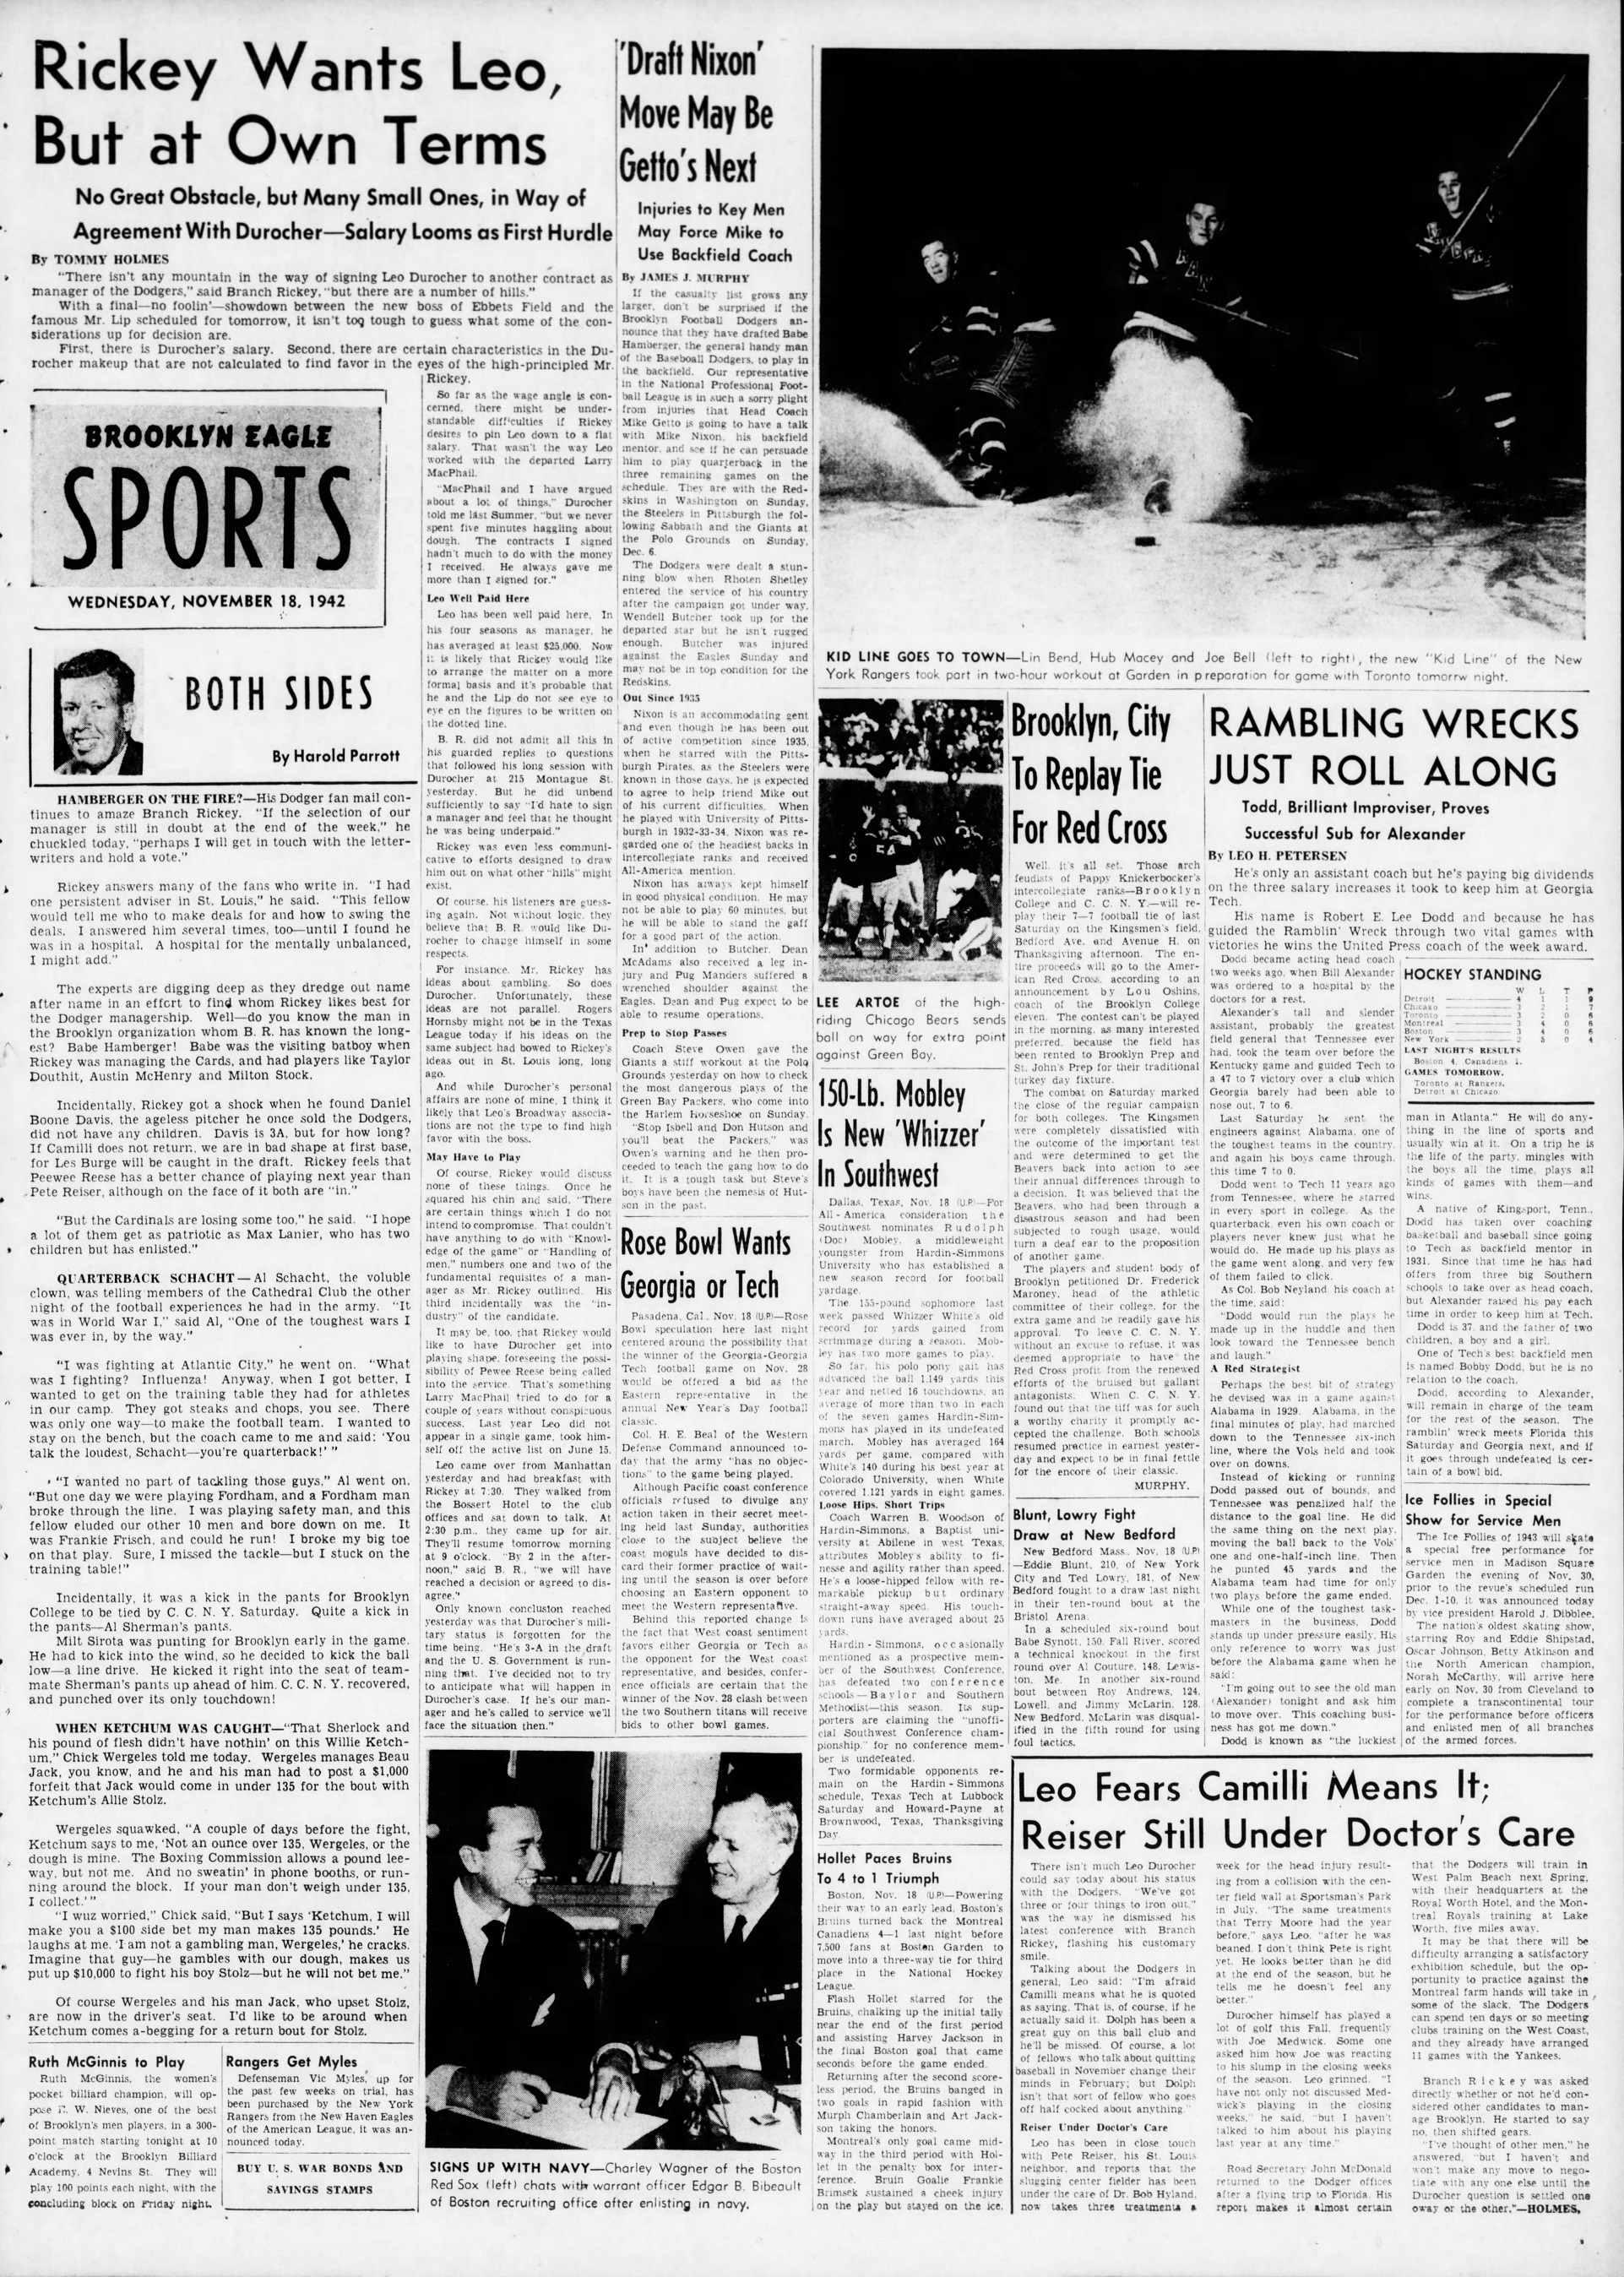 The_Brooklyn_Daily_Eagle_Wed__Nov_18__1942_(4).jpg